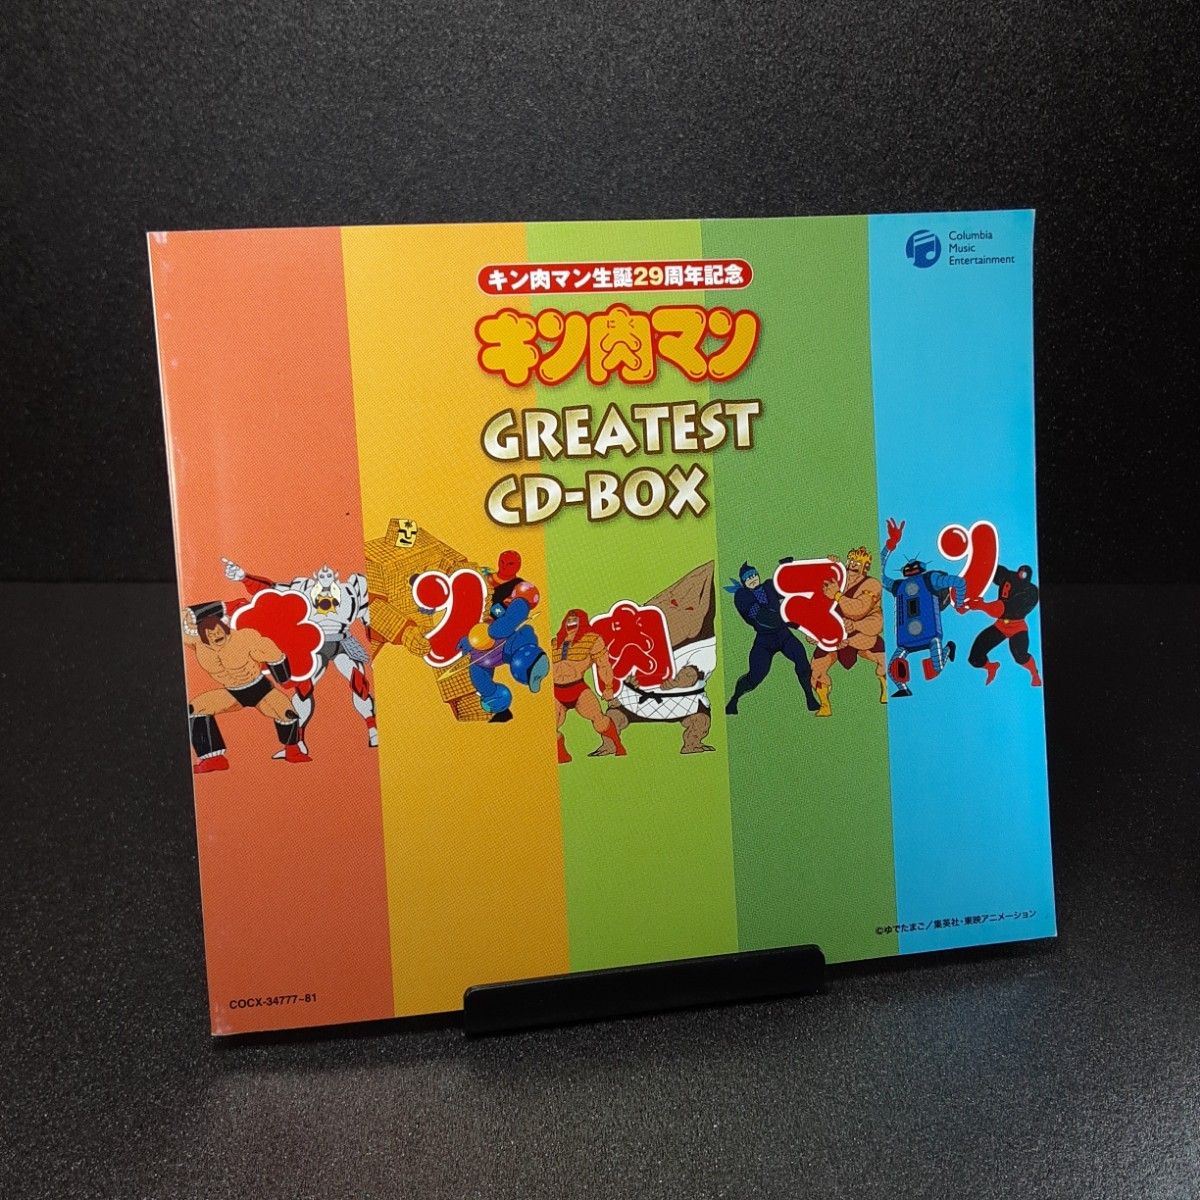 生誕29周年記念 キン肉マン GREATEST CD-BOX